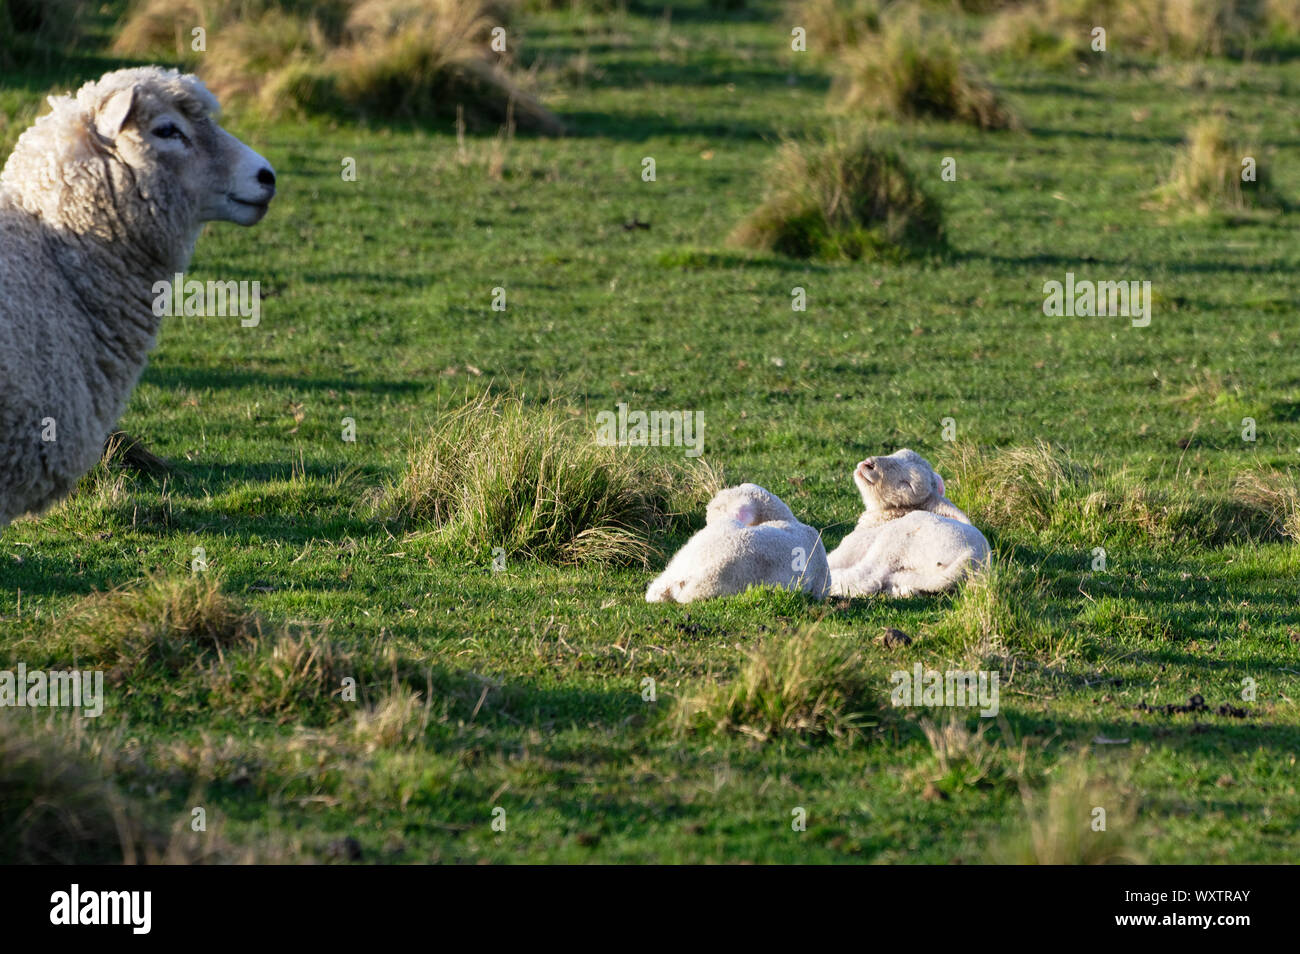 Una oveja mantiene vigilancia sobre sus corderos gemelos Foto de stock